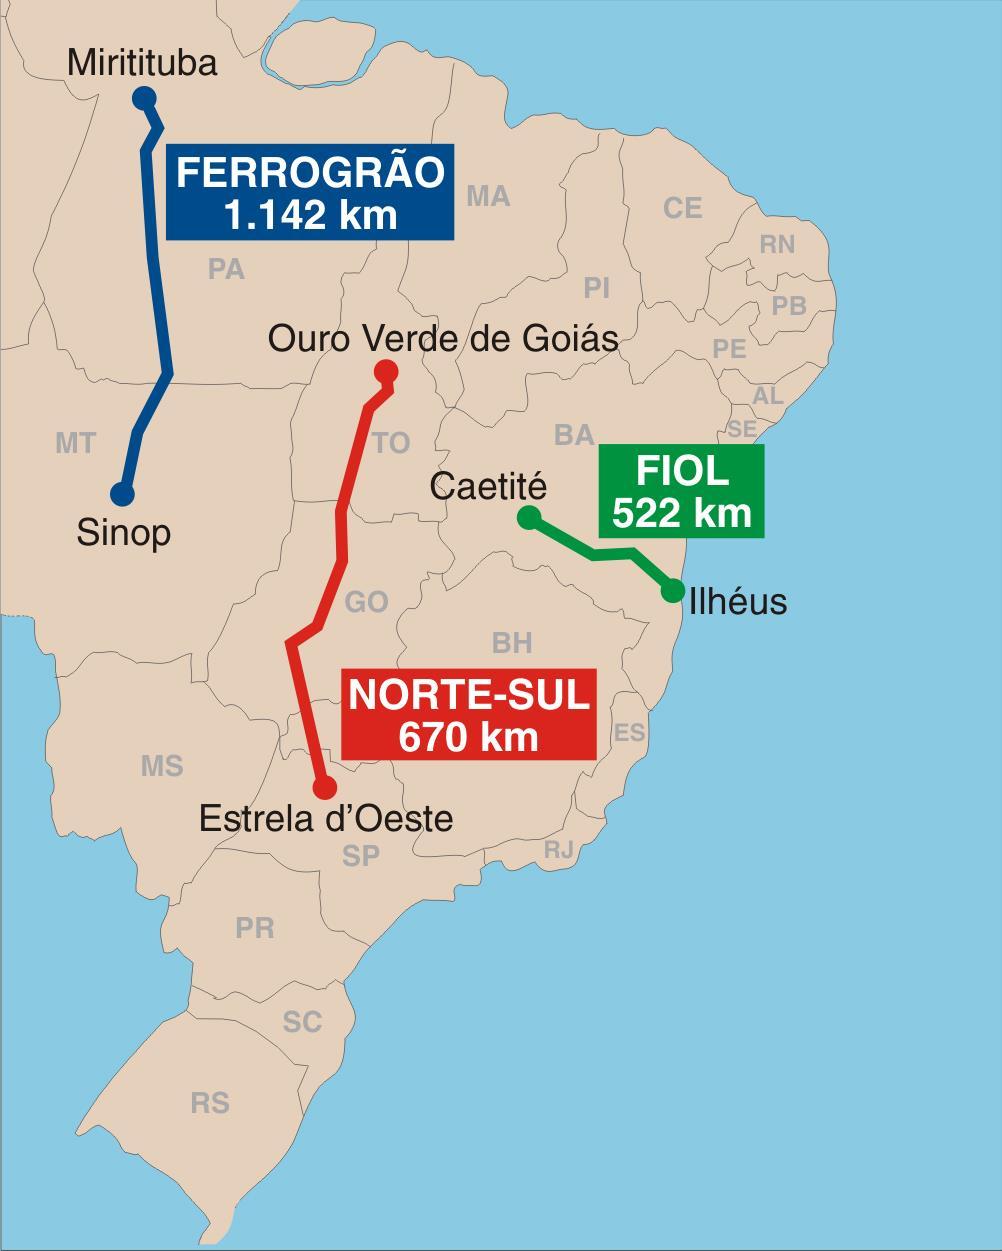 Cenário Prioritário FERROGRÃO Ferrovia EF 170 (MT/PA) FIOL FERROVIA DE INTEGRAÇÃO OESTE LESTE Ferrovia EF 334